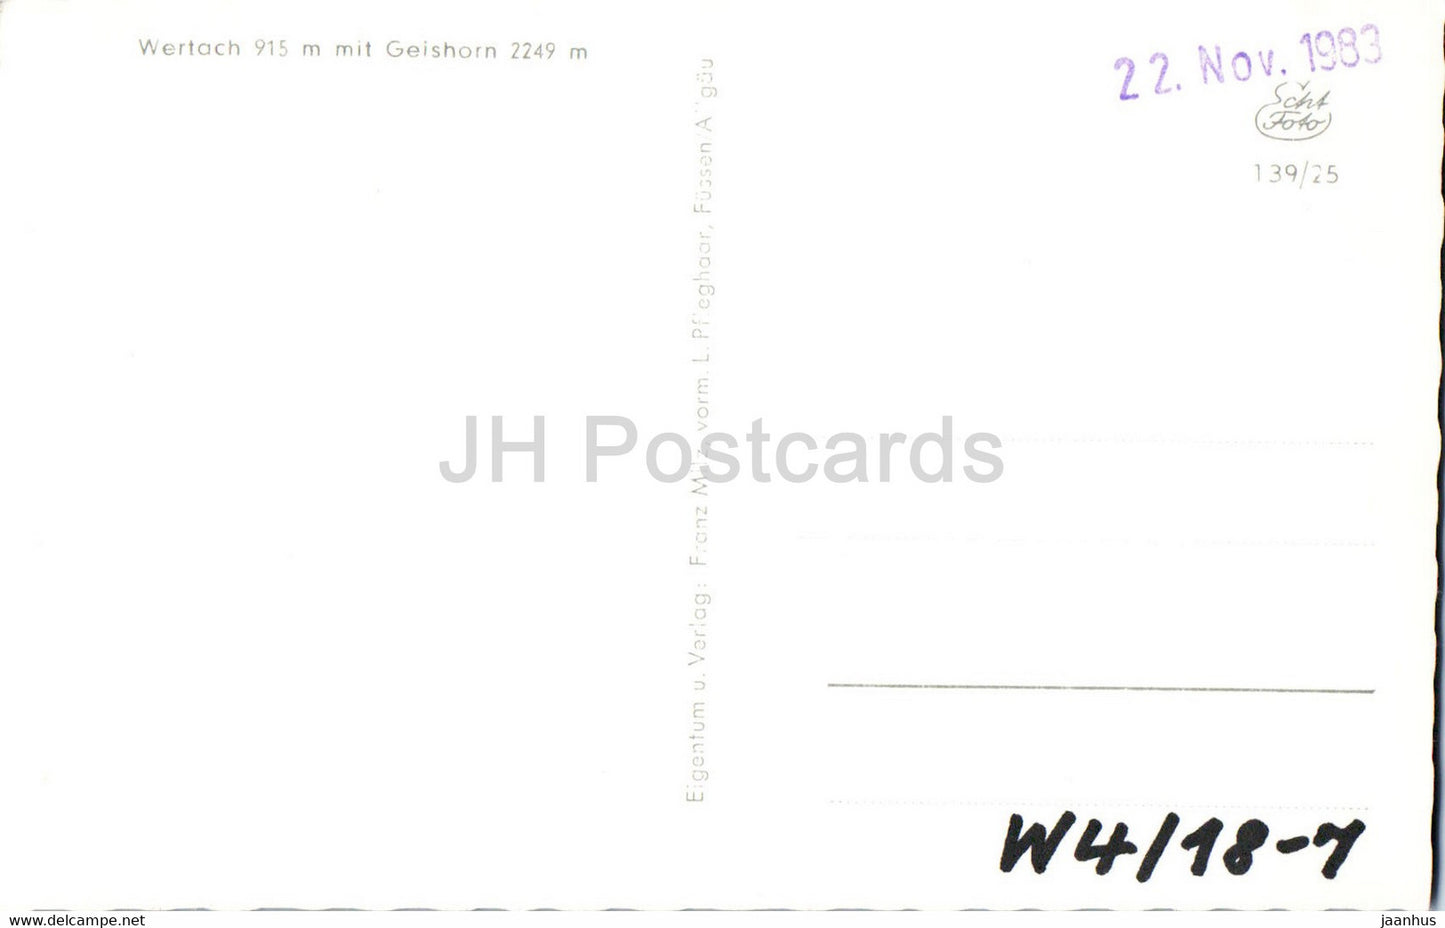 Wertach 915 m mit Geishorn 2249 m - old postcard - Germany - unused